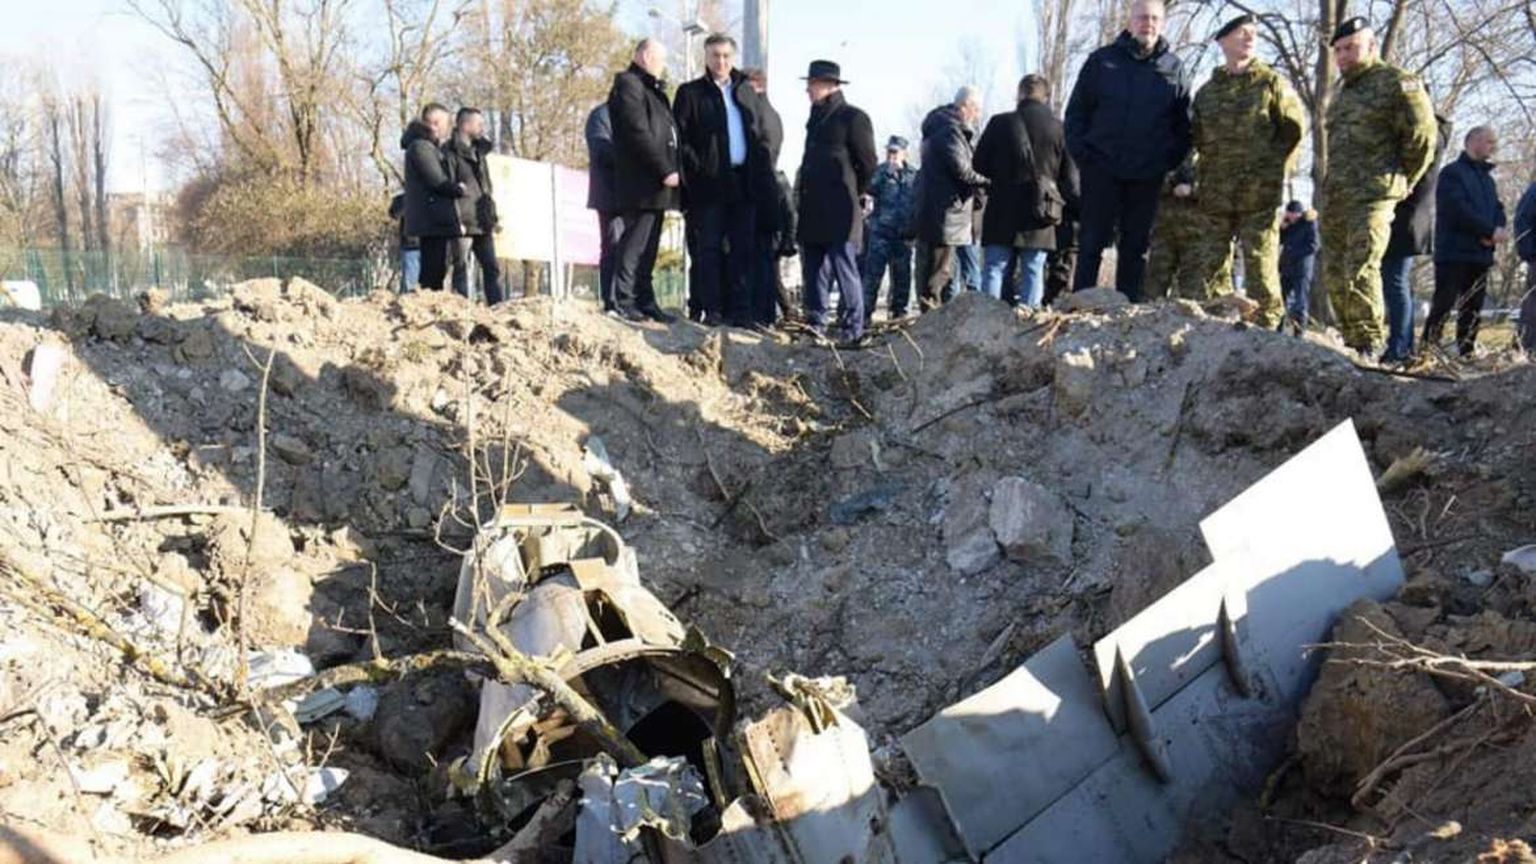 Inimesed Zagrebis drooni poolt 11. märtsil 2022 tekitatud pommikraatrit silmitsemas.